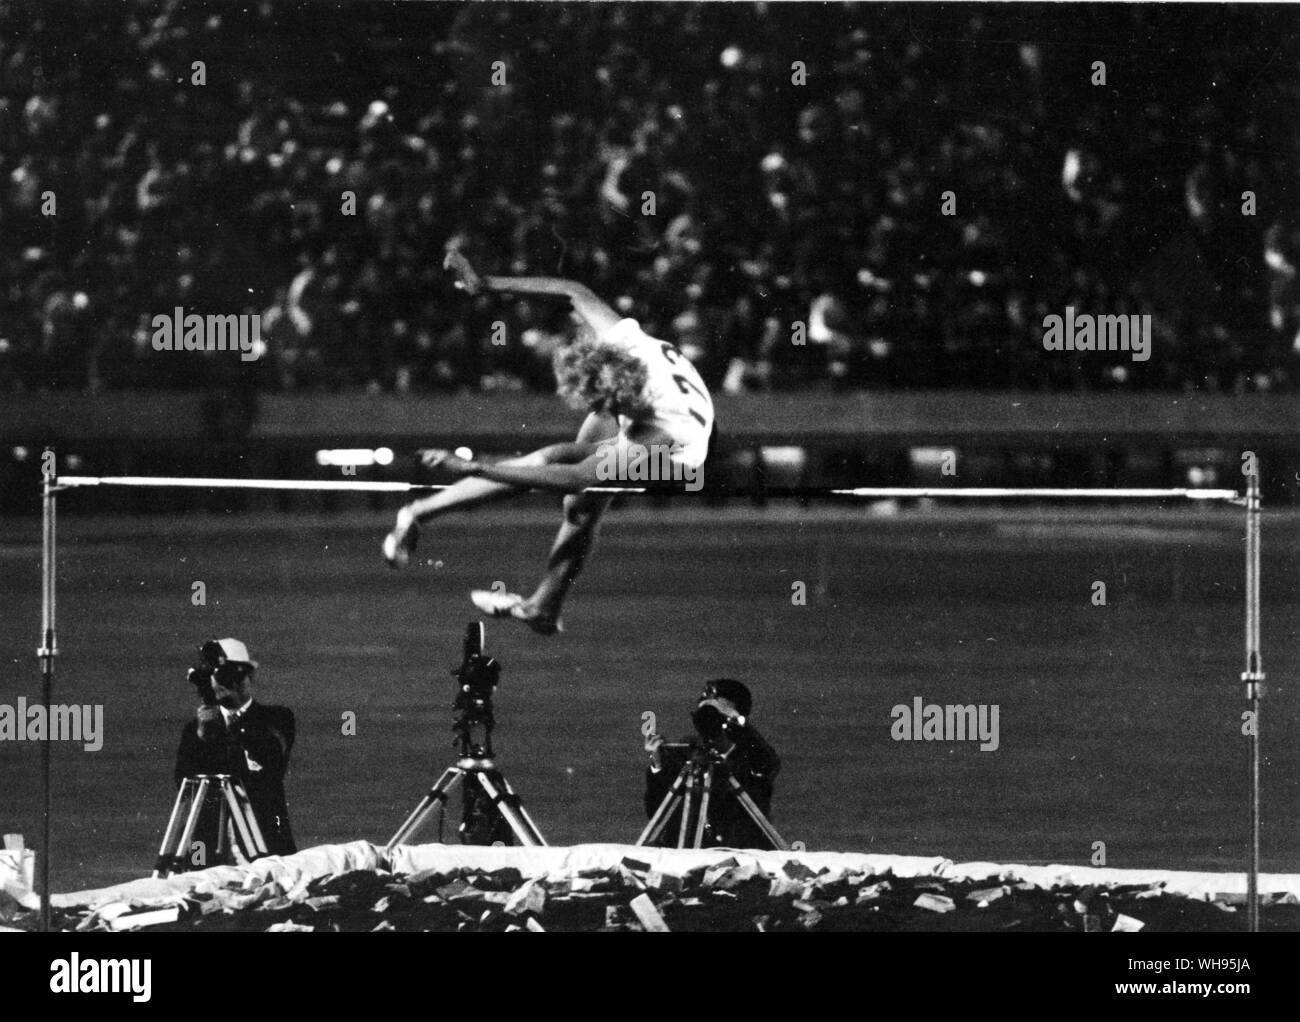 Japon, Tokyo, Jeux Olympiques 1964 : saut en hauteur. . Jolanda Balas (Roum) effacé 1,90m pour gagner Banque D'Images